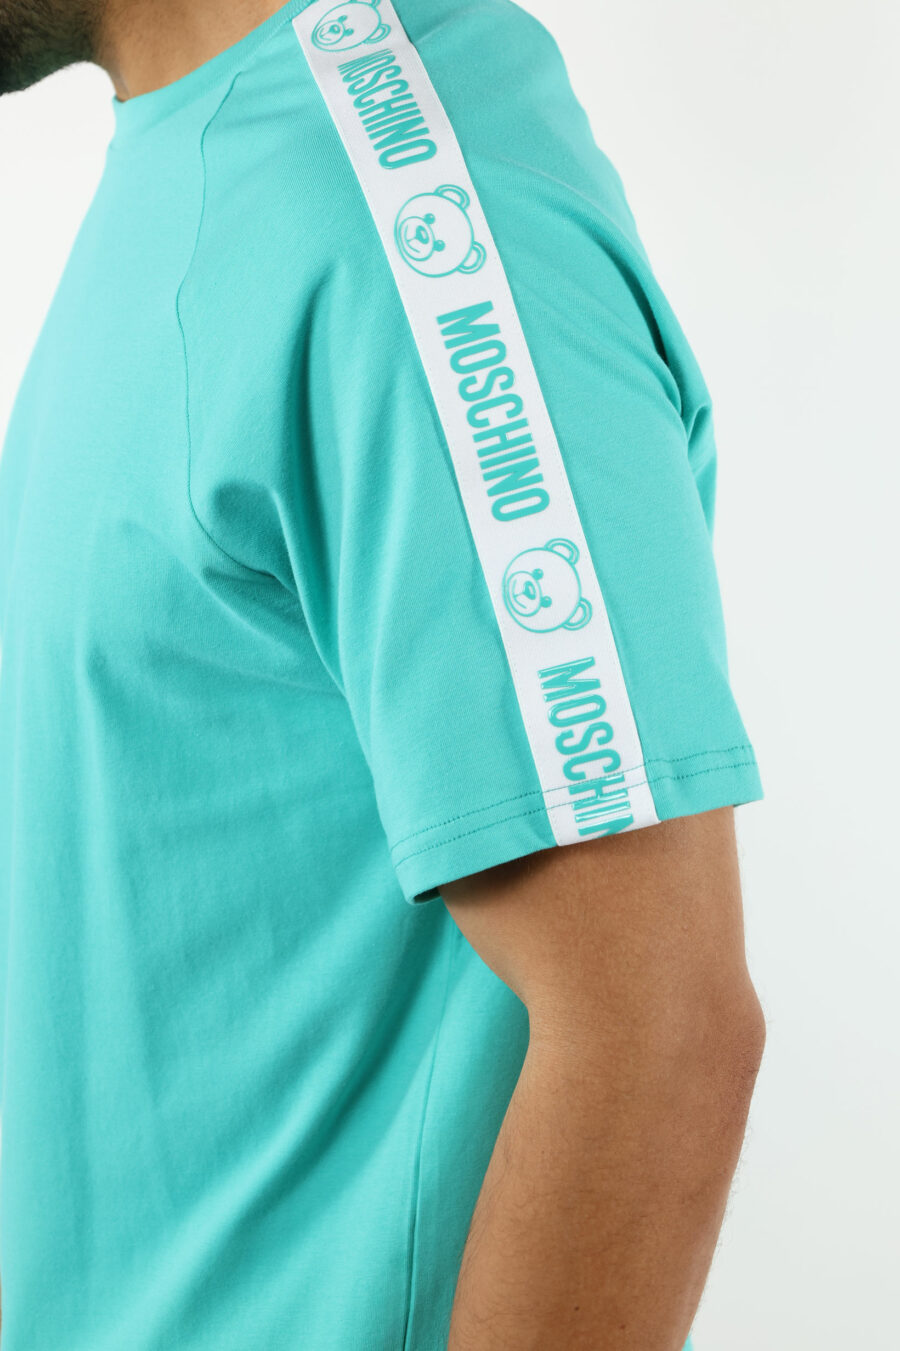 Camiseta azul aguamarina con logo oso "underbear" en cinta hombros - 111007